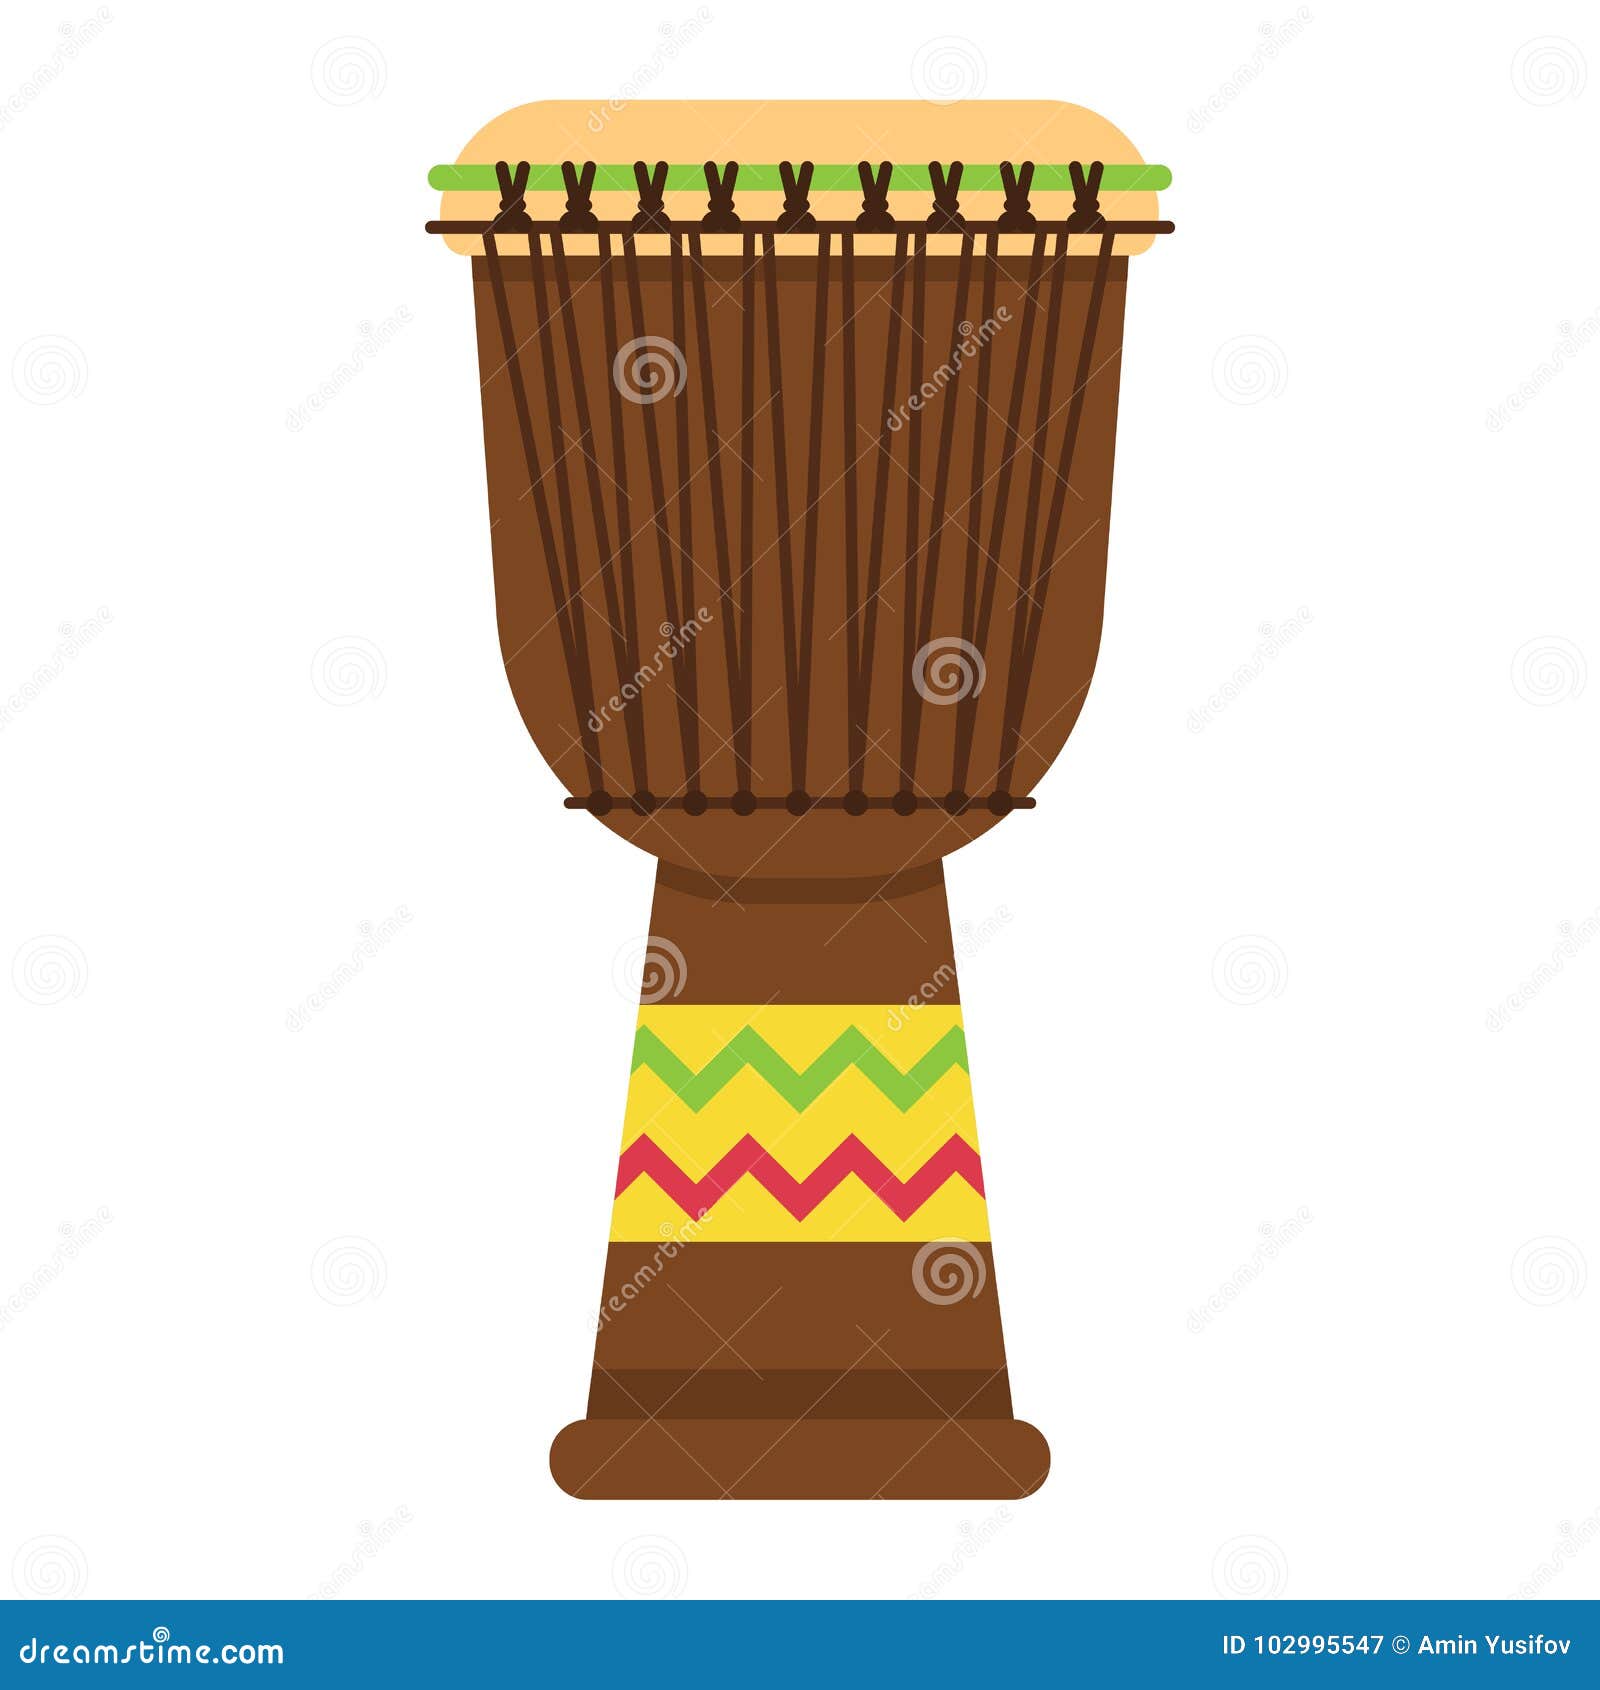 Djembé En Bois Ethnique Icône Tambour à Main Africain Instrument